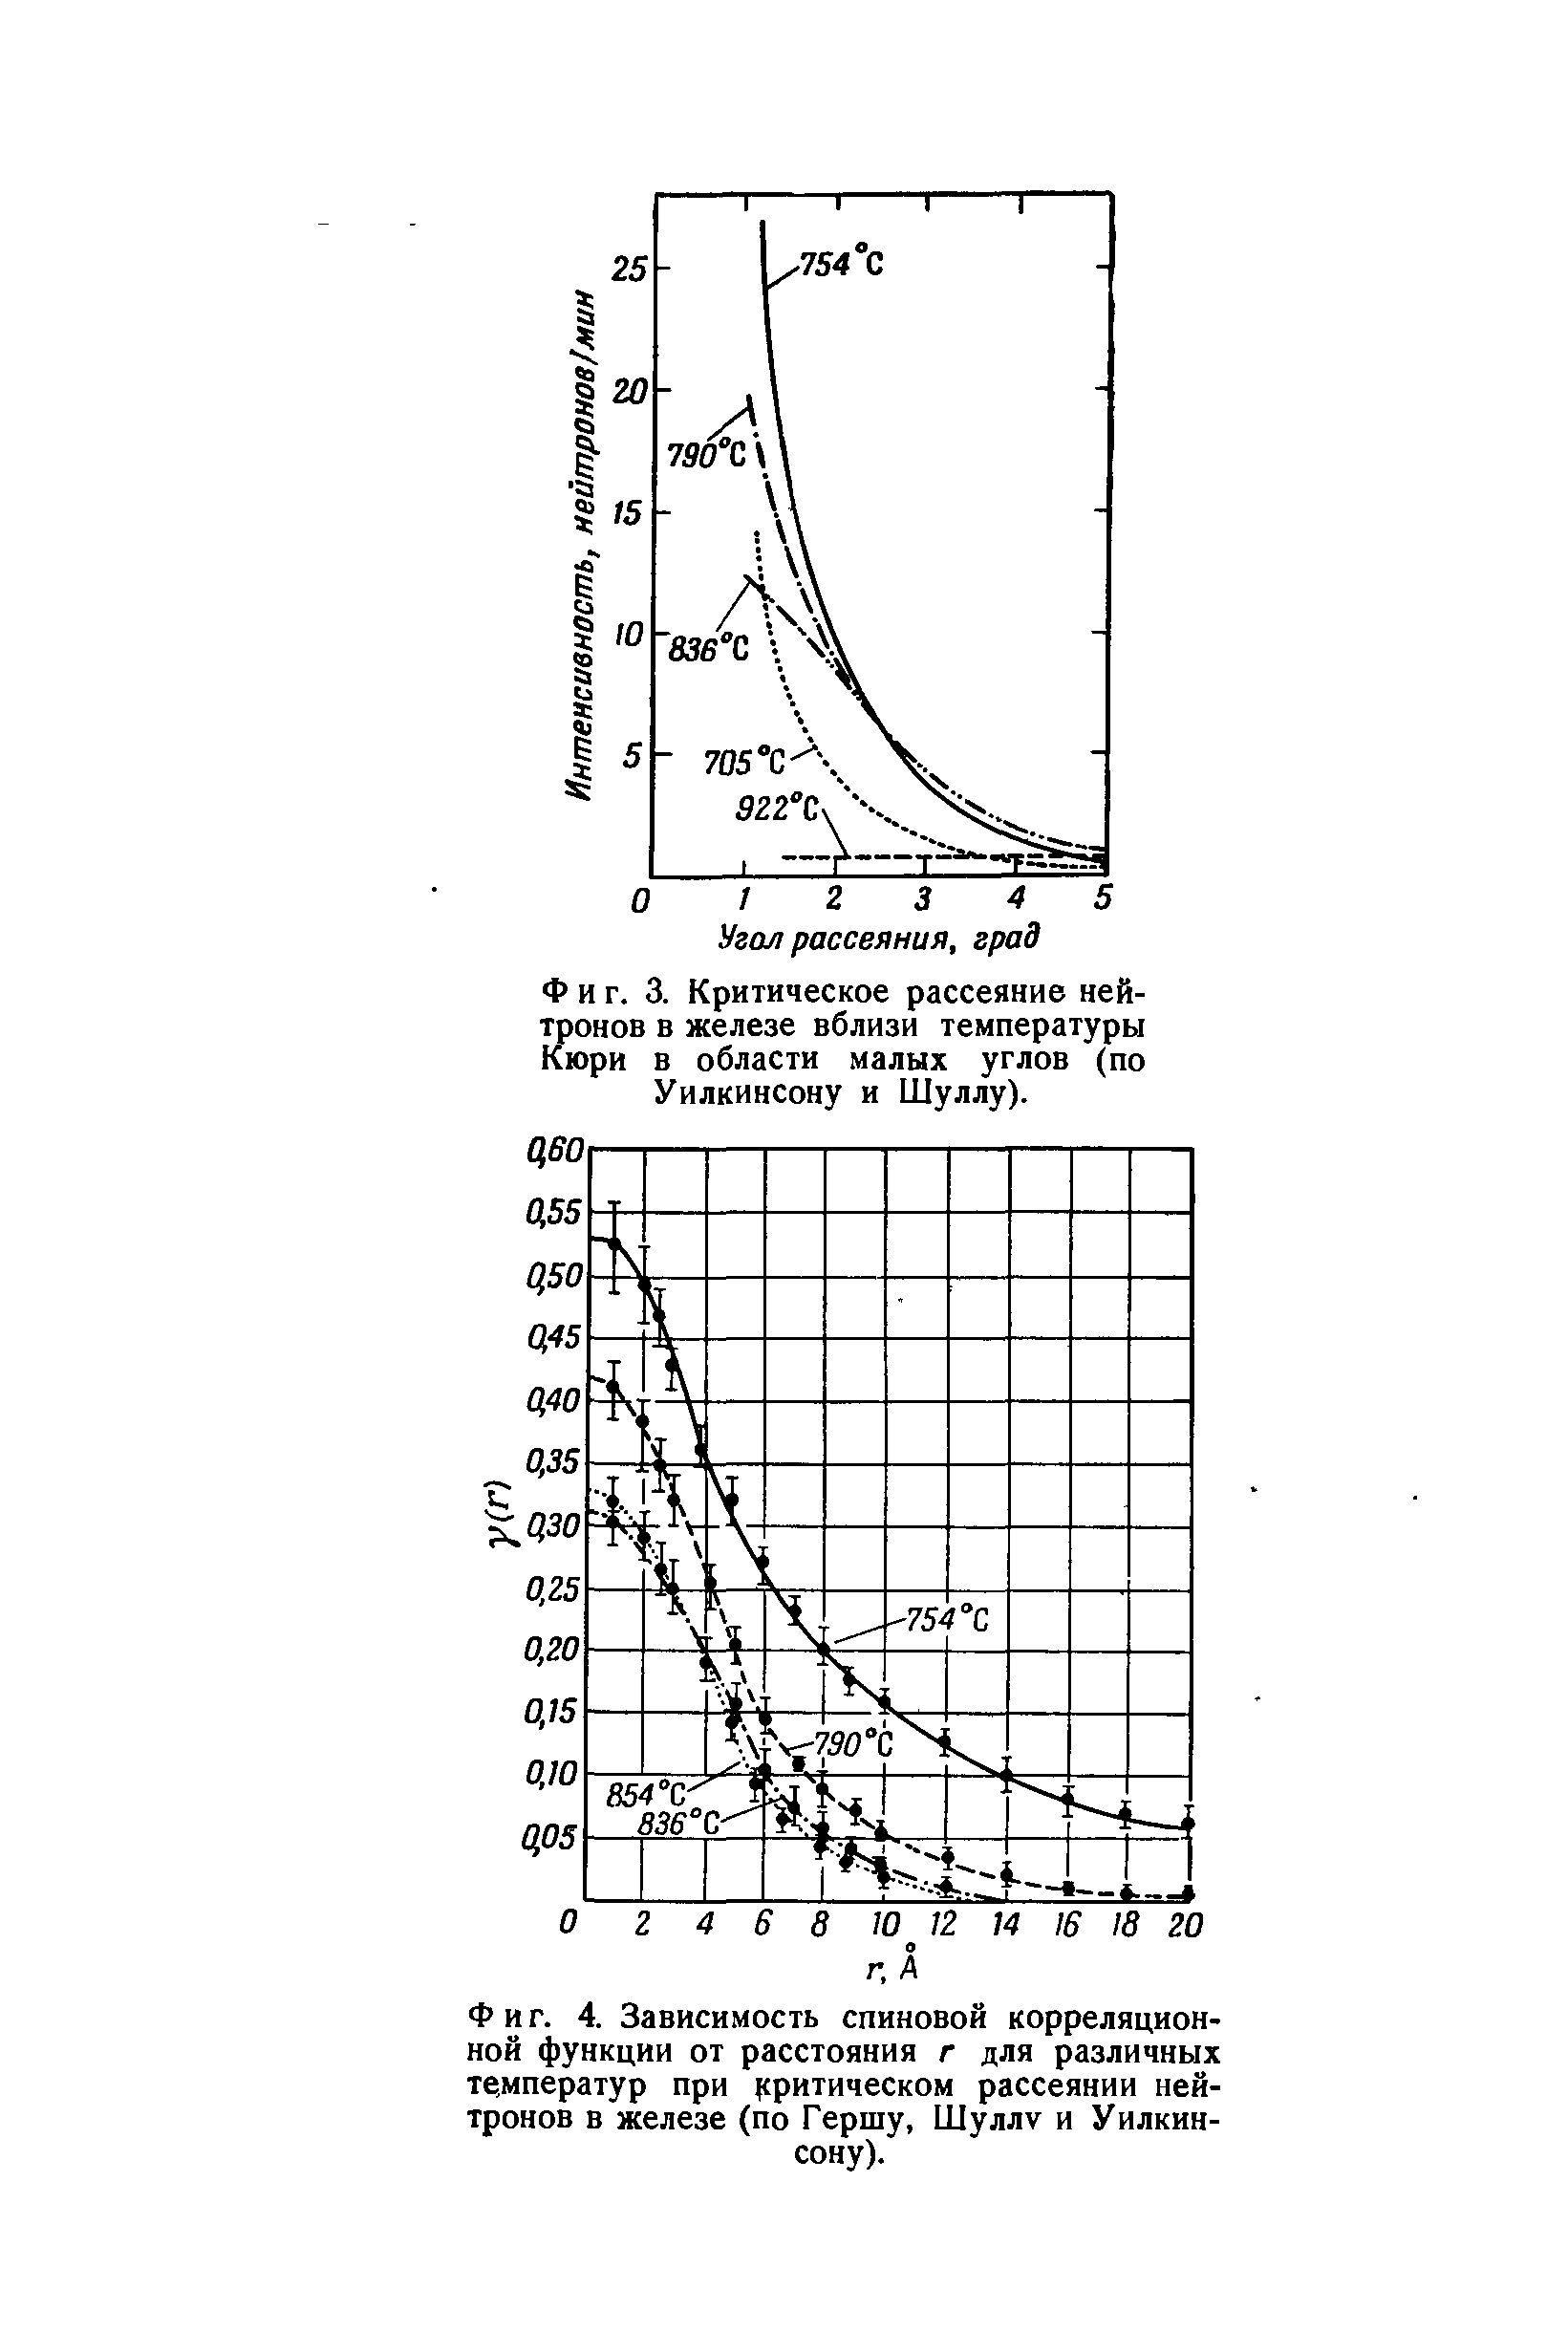 Фиг. 4. Зависимость спиновой корреляционной функции от расстояния г для различных температур при (сритическом <a href="/info/379362">рассеянии нейтронов</a> в железе (по Гершу, Шуллу и Уилкинсону).
